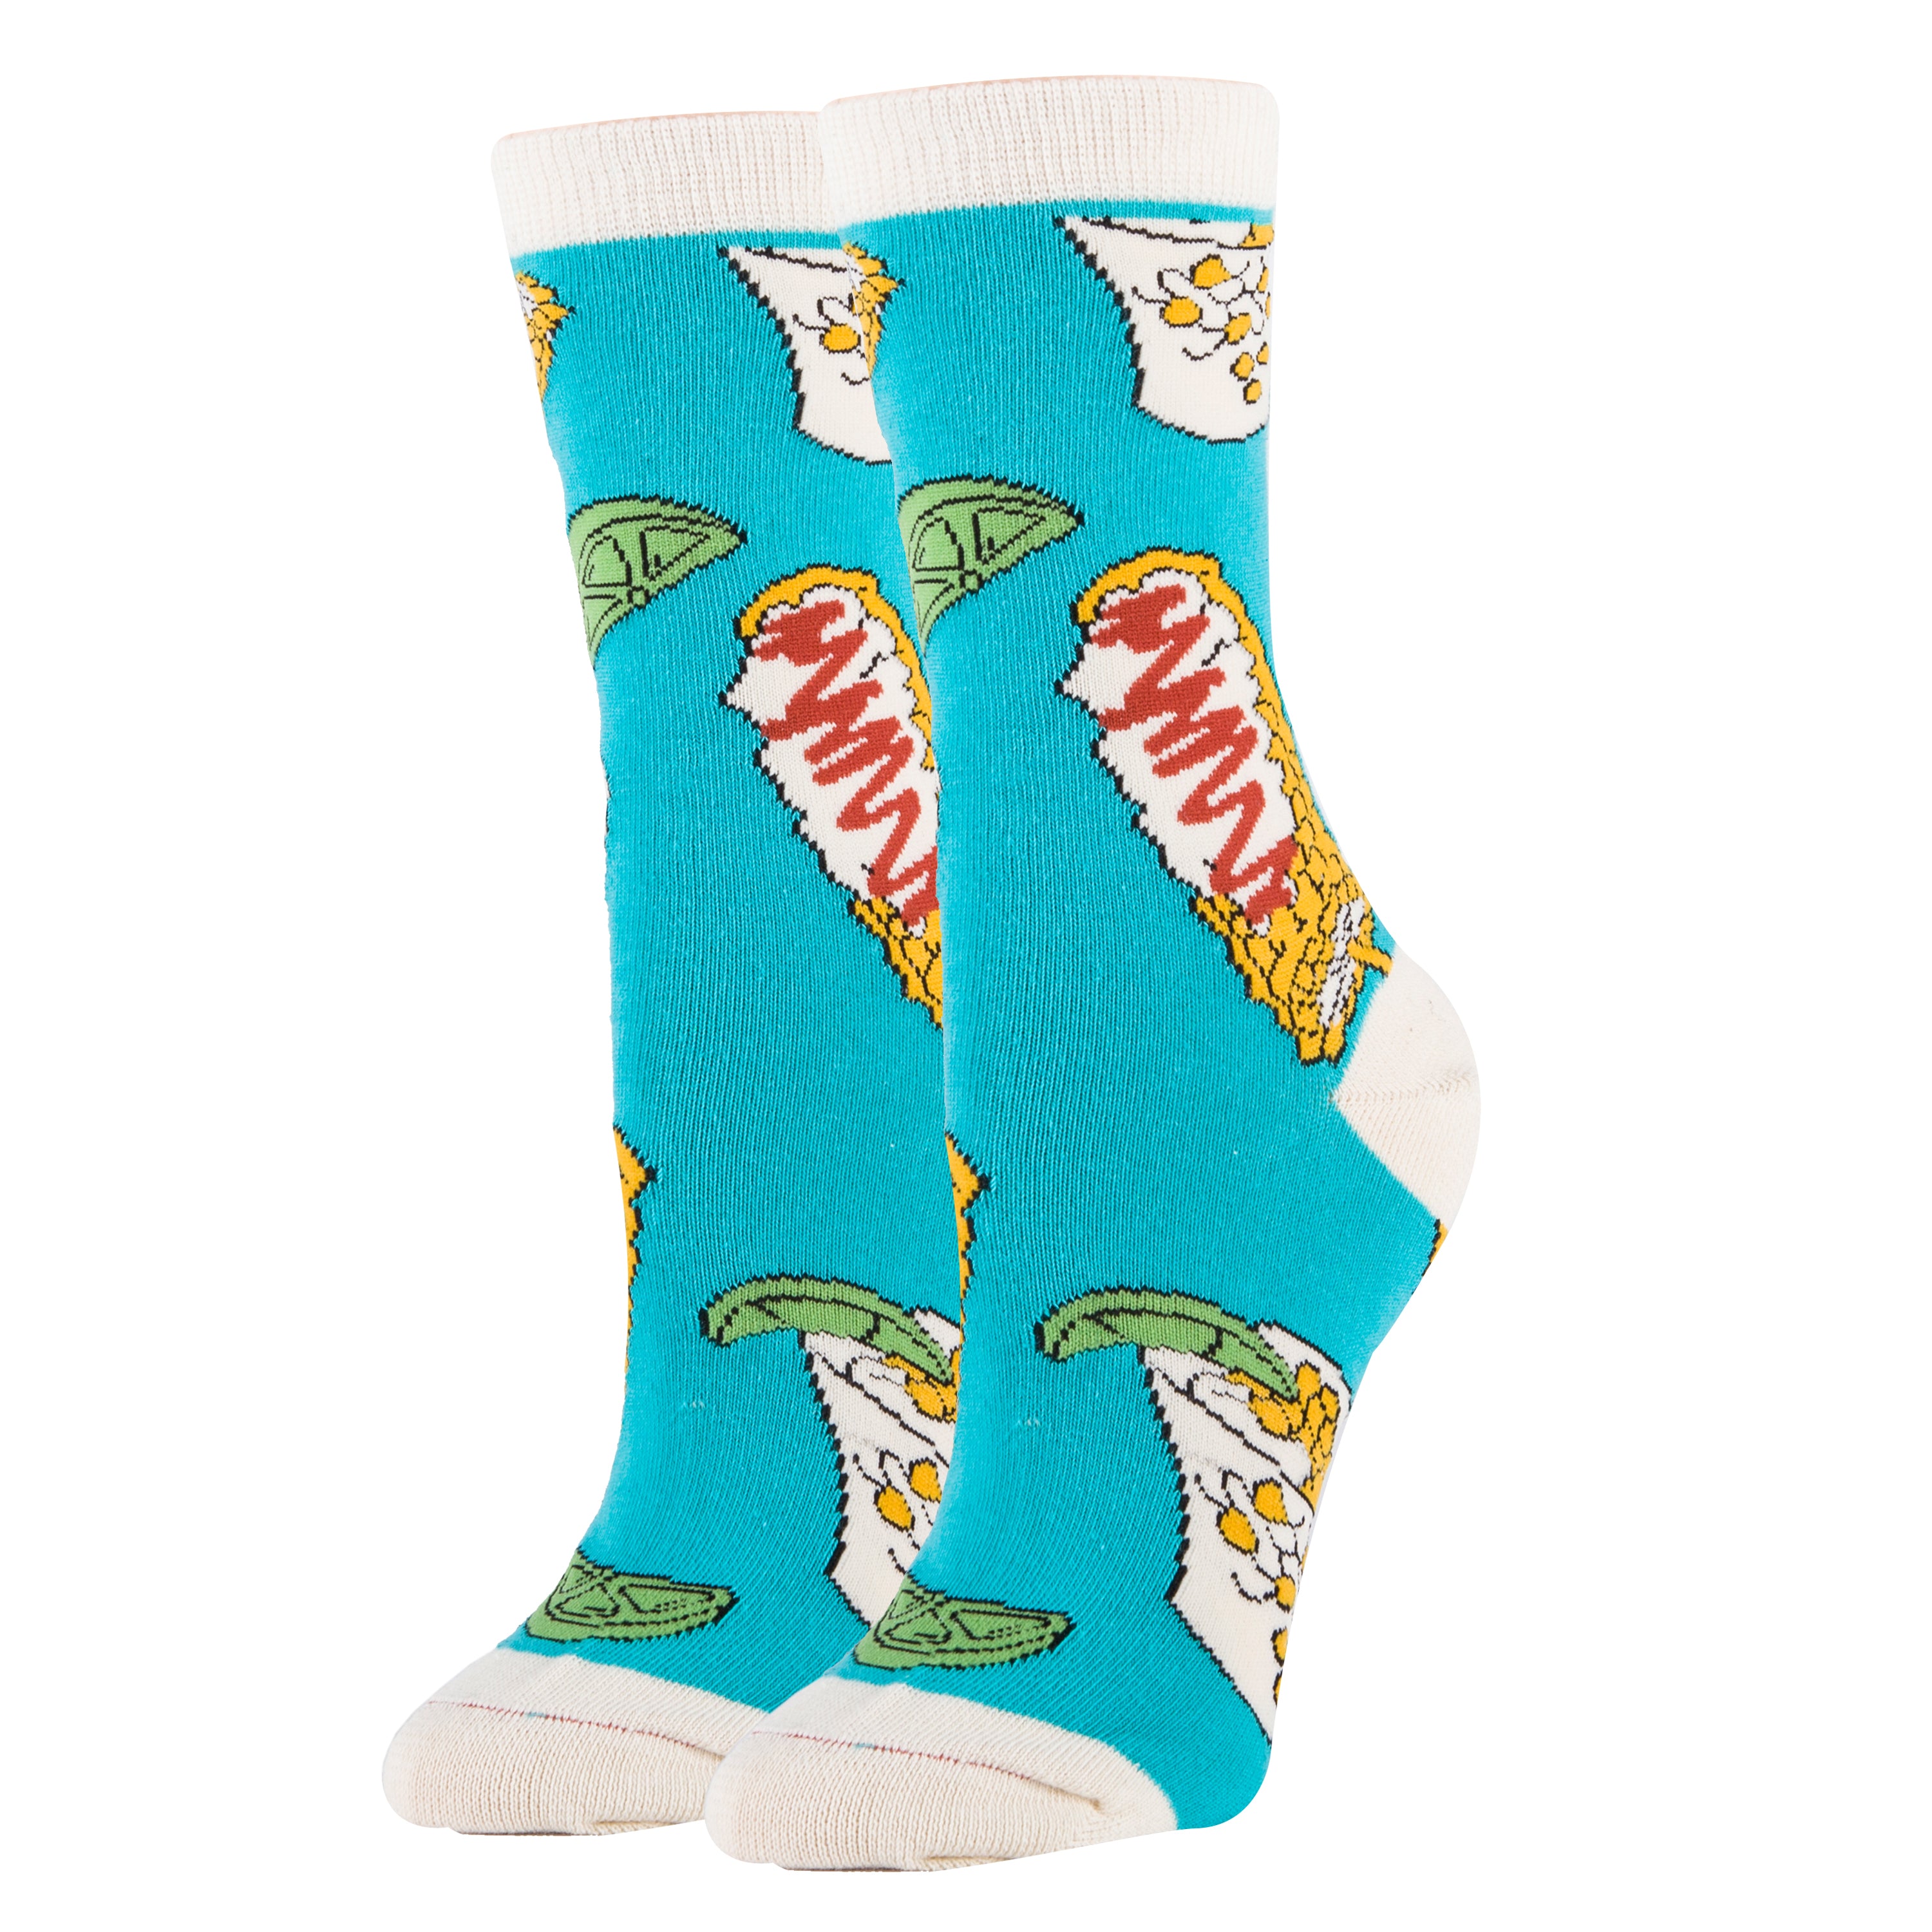 Elote Socks | Novelty Crew Socks For Women